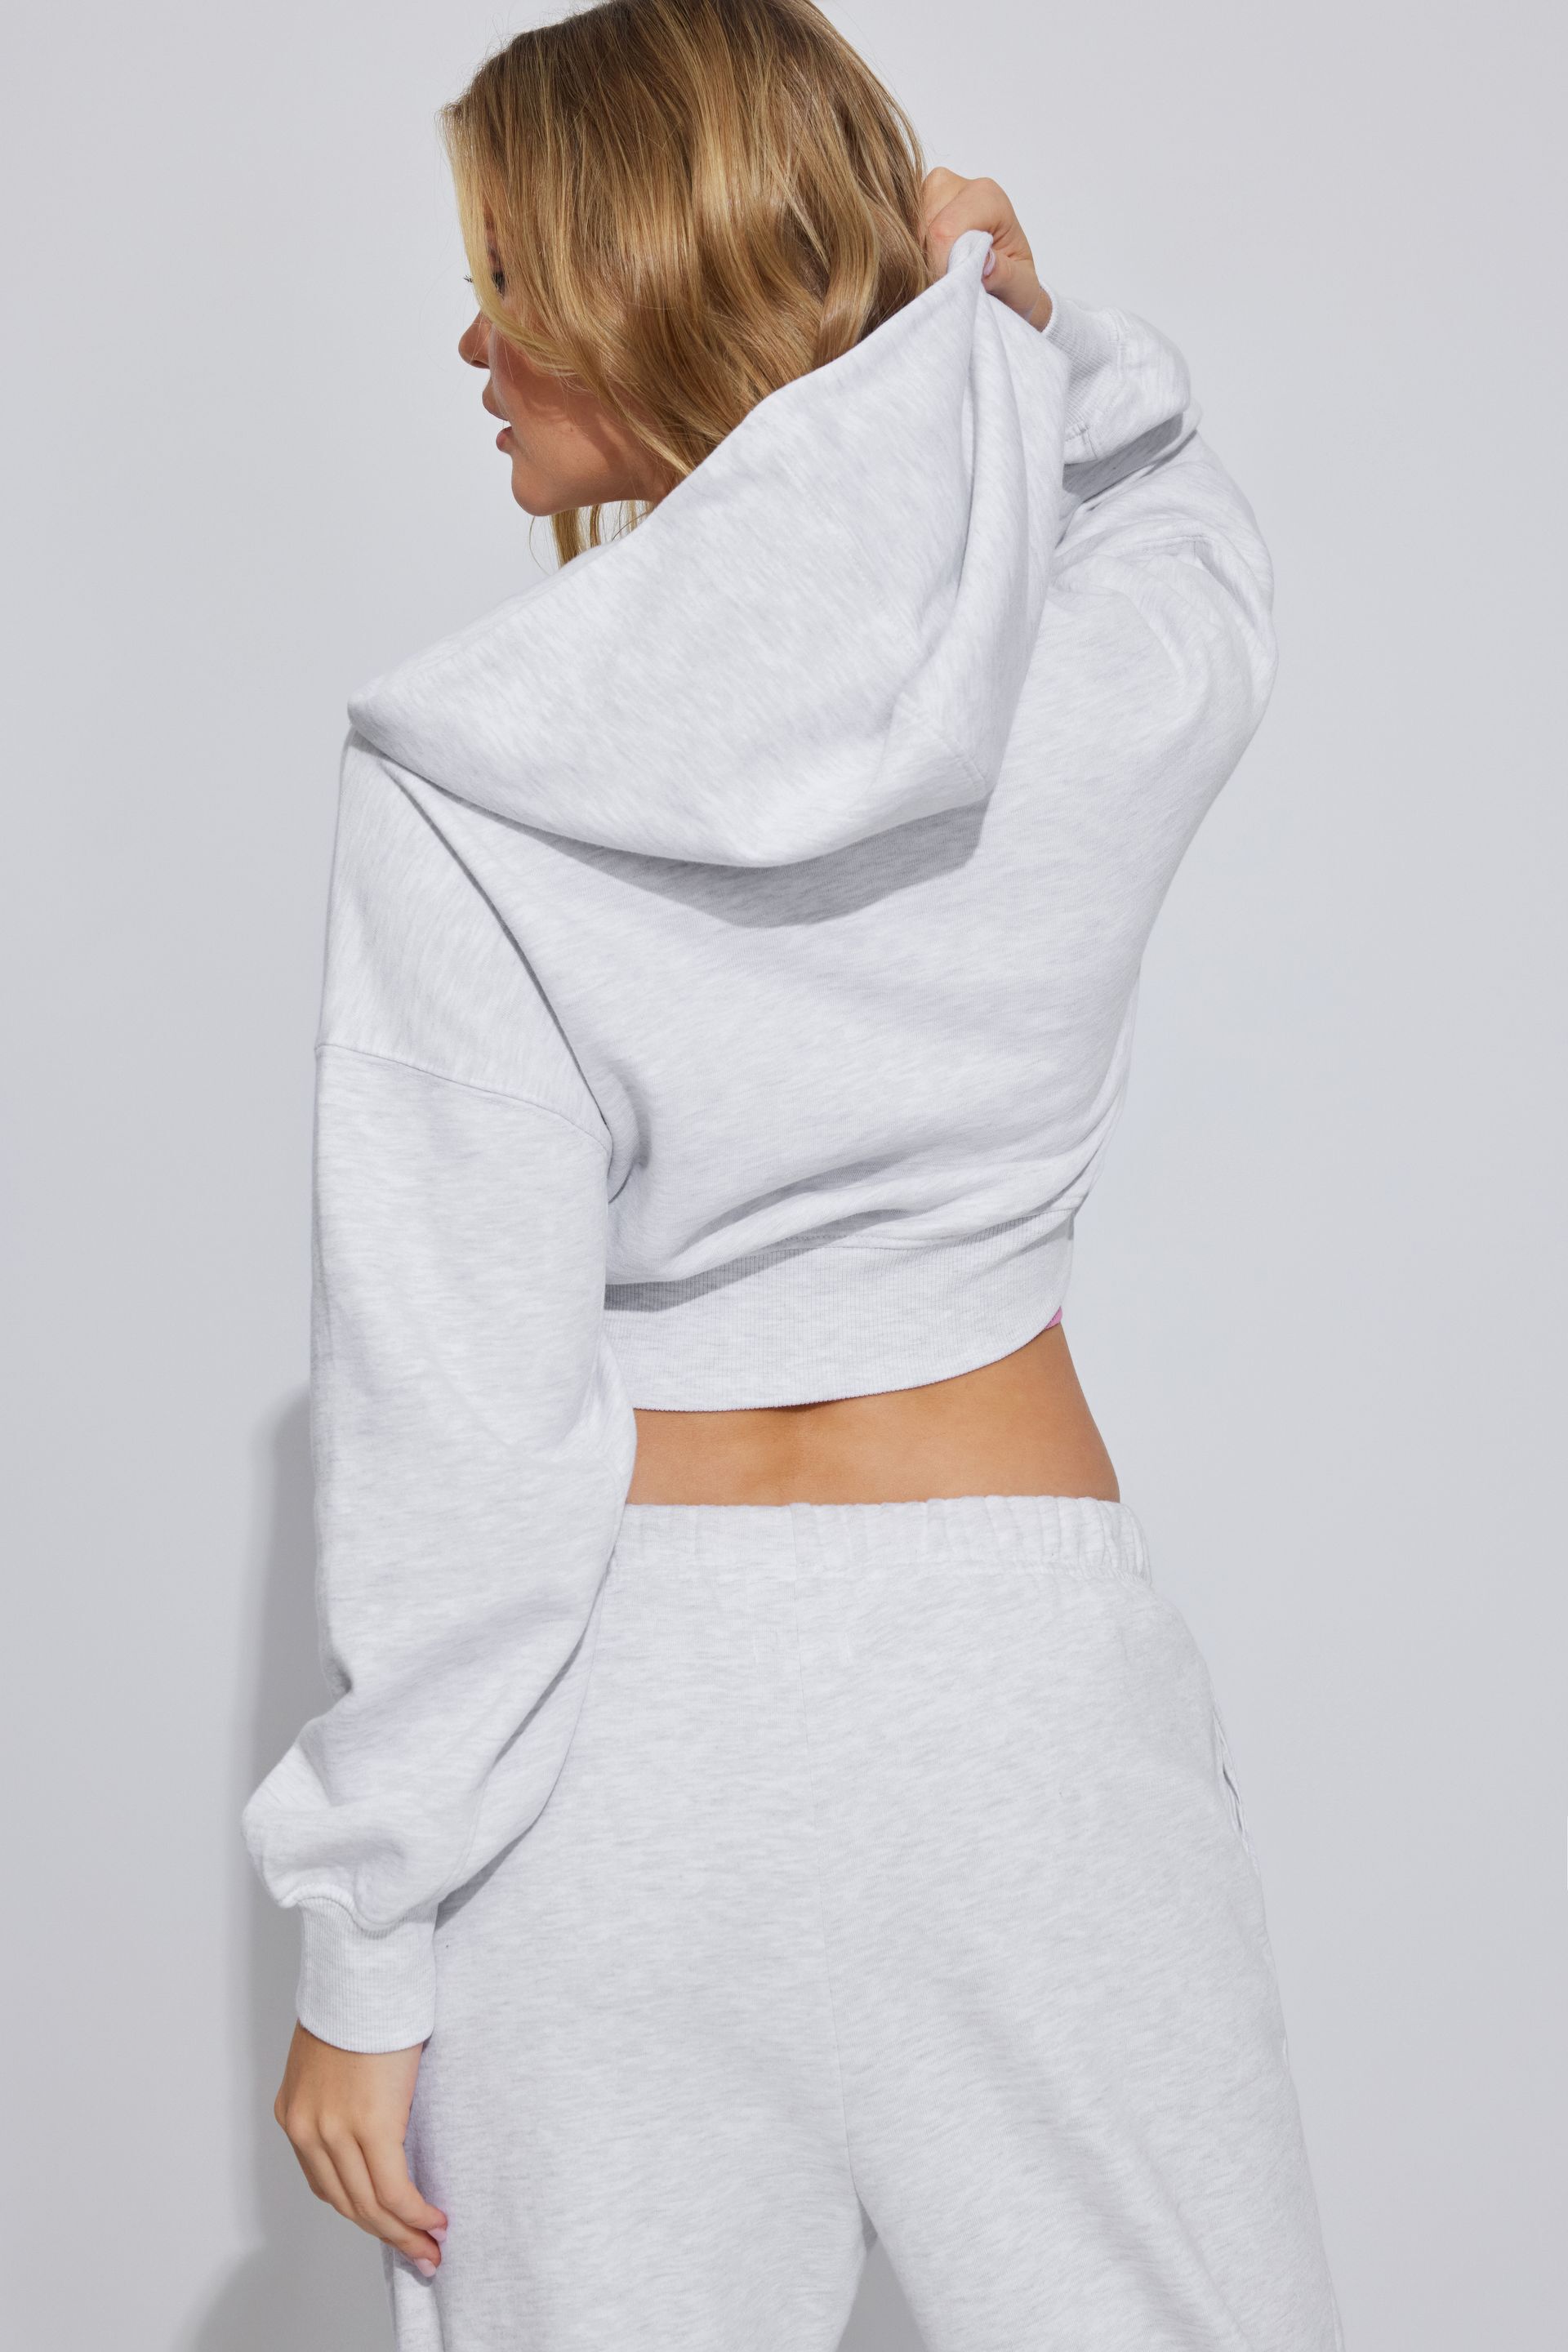 Hoodies & Sweatshirts | Women's Fleece Tops | Garage